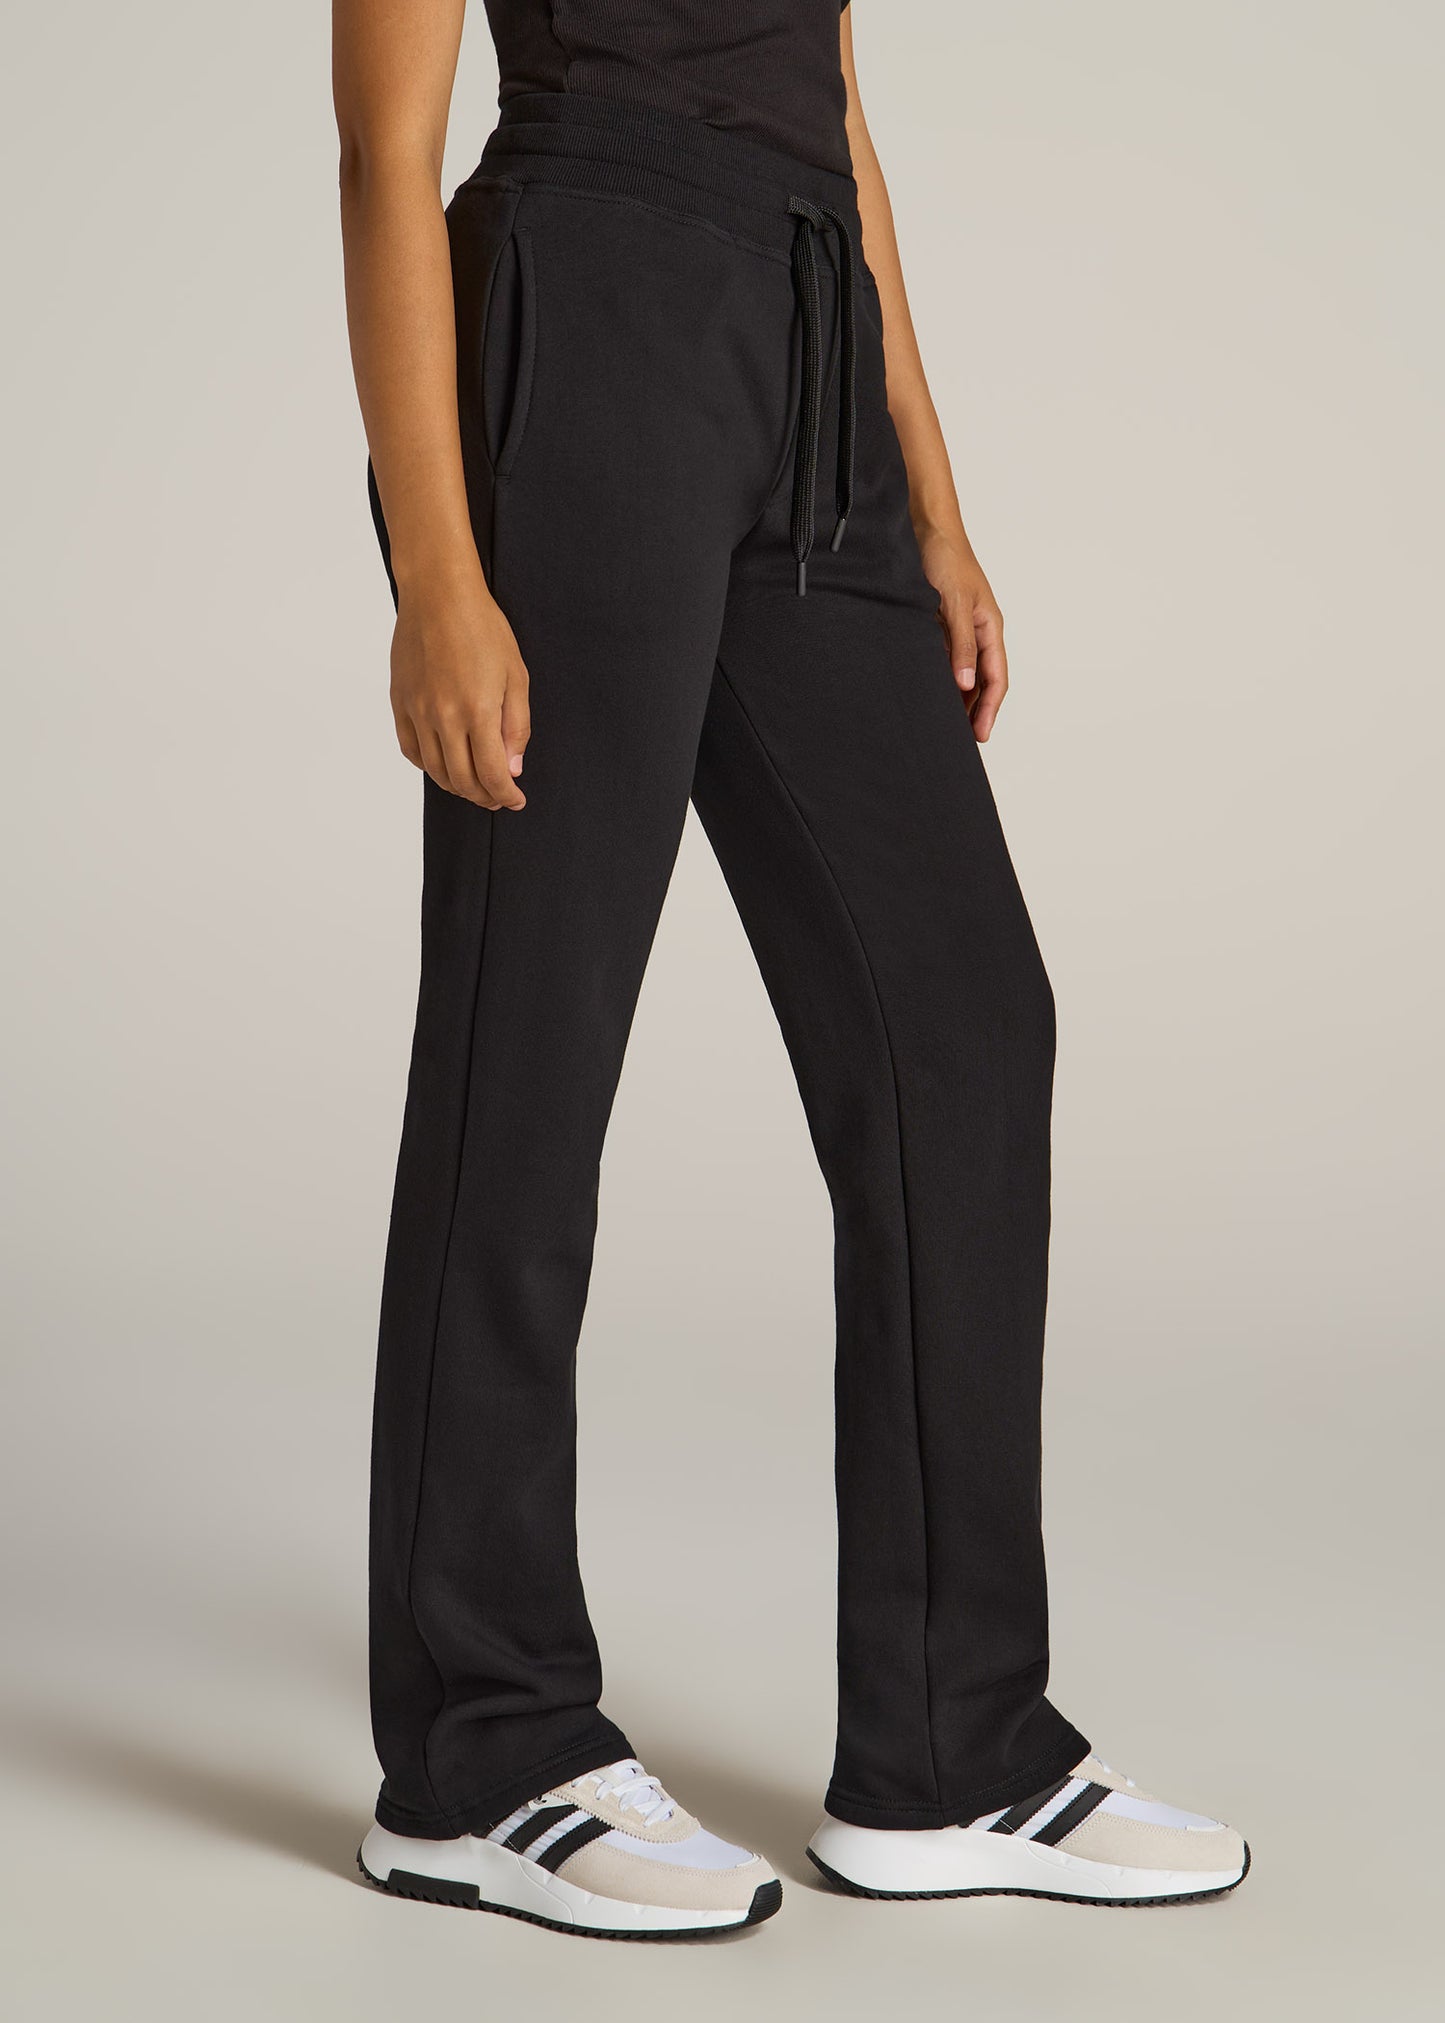 A tall woman wearing American Tall's Wearever Fleece Open-Bottom Sweatpants for Tall Women in Black.